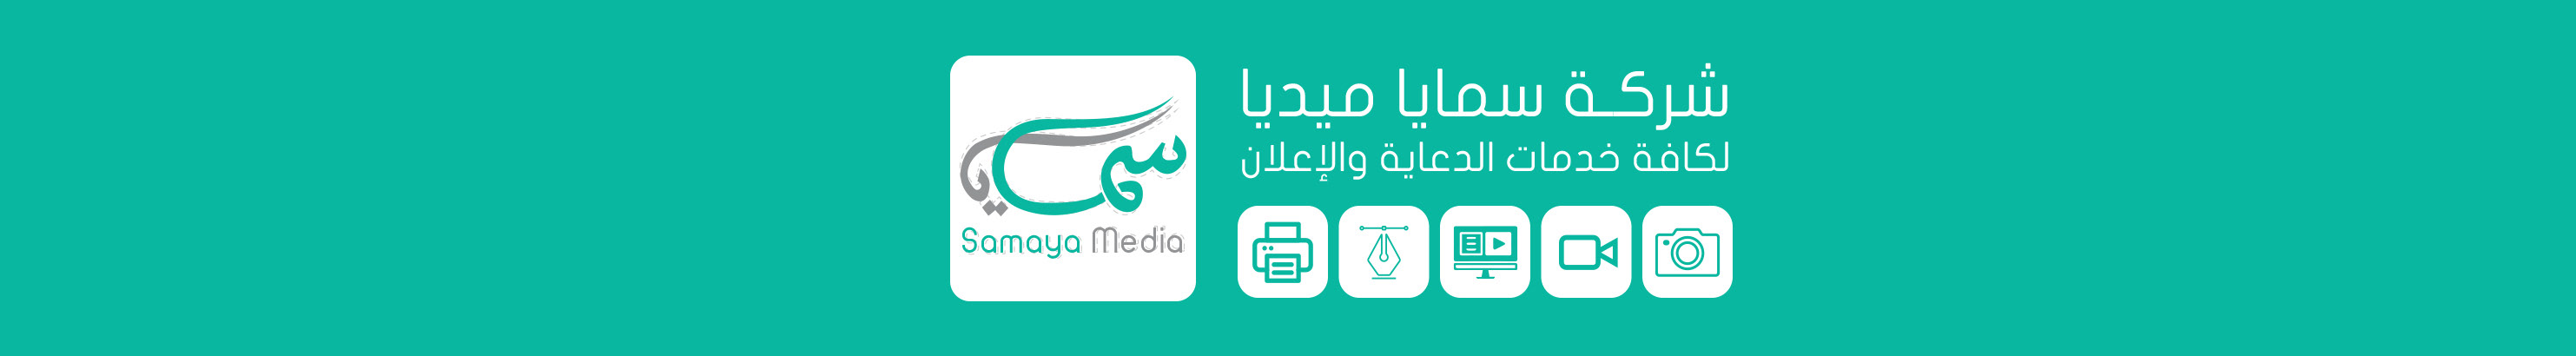 Profil-Banner von samaya media